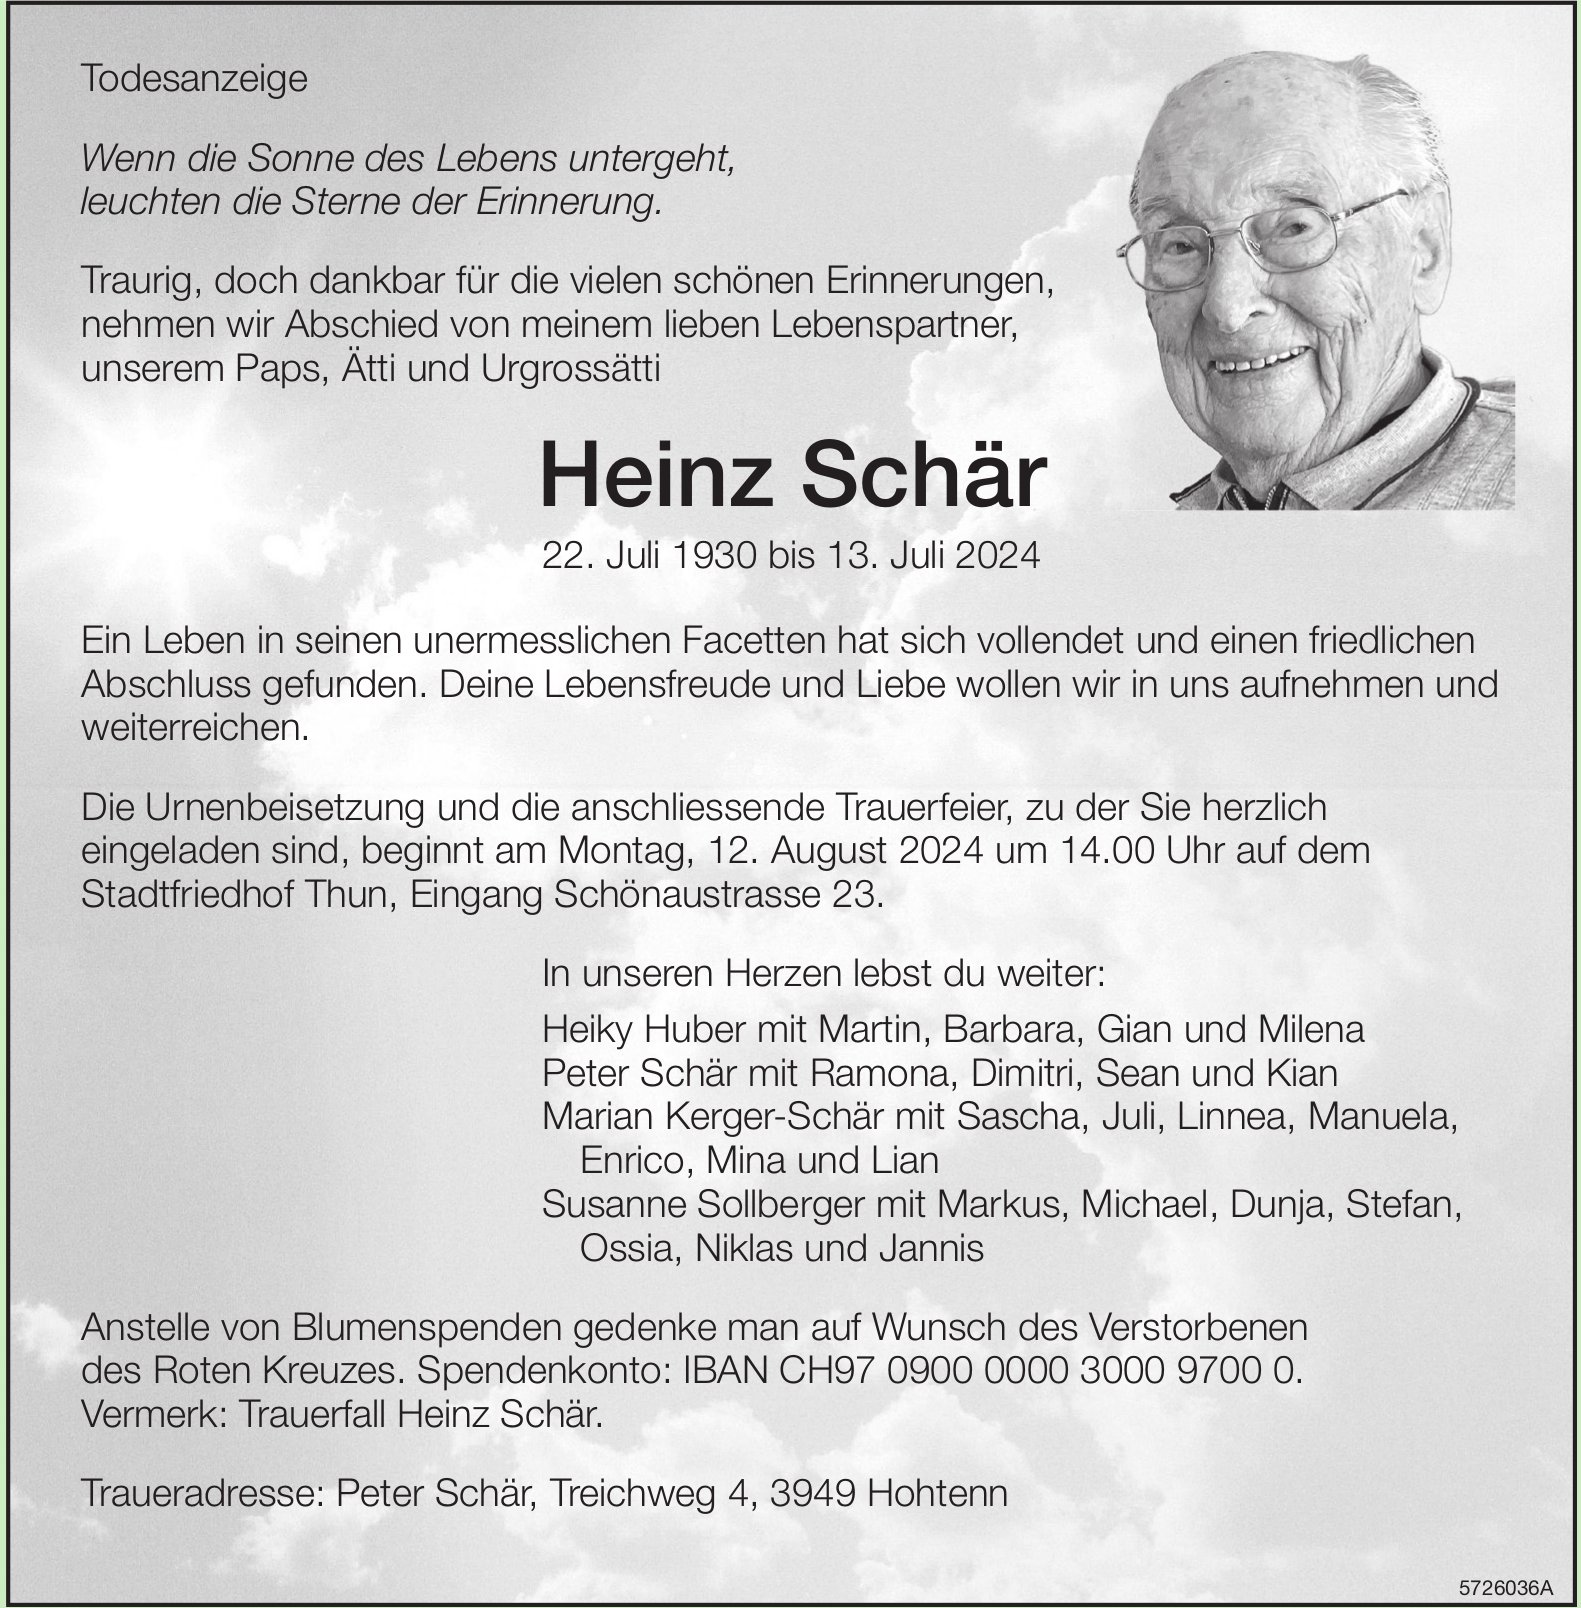 Schär Heinz, Juli 2024 / TA